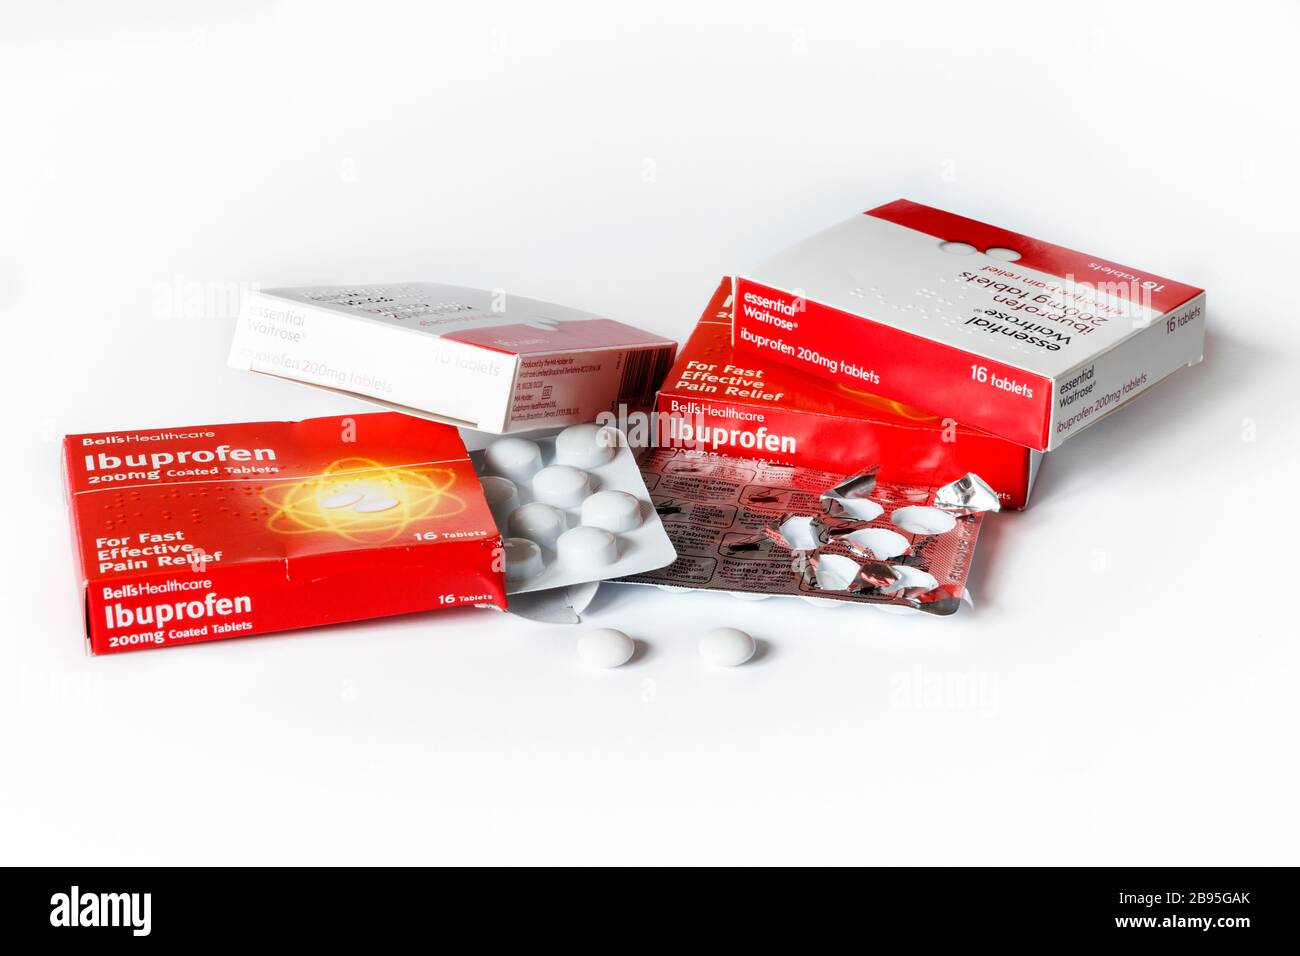 Faltschachteln mit Ibuprofen-Tabletten und Blisterpackungen, aus denen zwei Tabletten entfernt werden, auf weißem Hintergrund Stockfoto